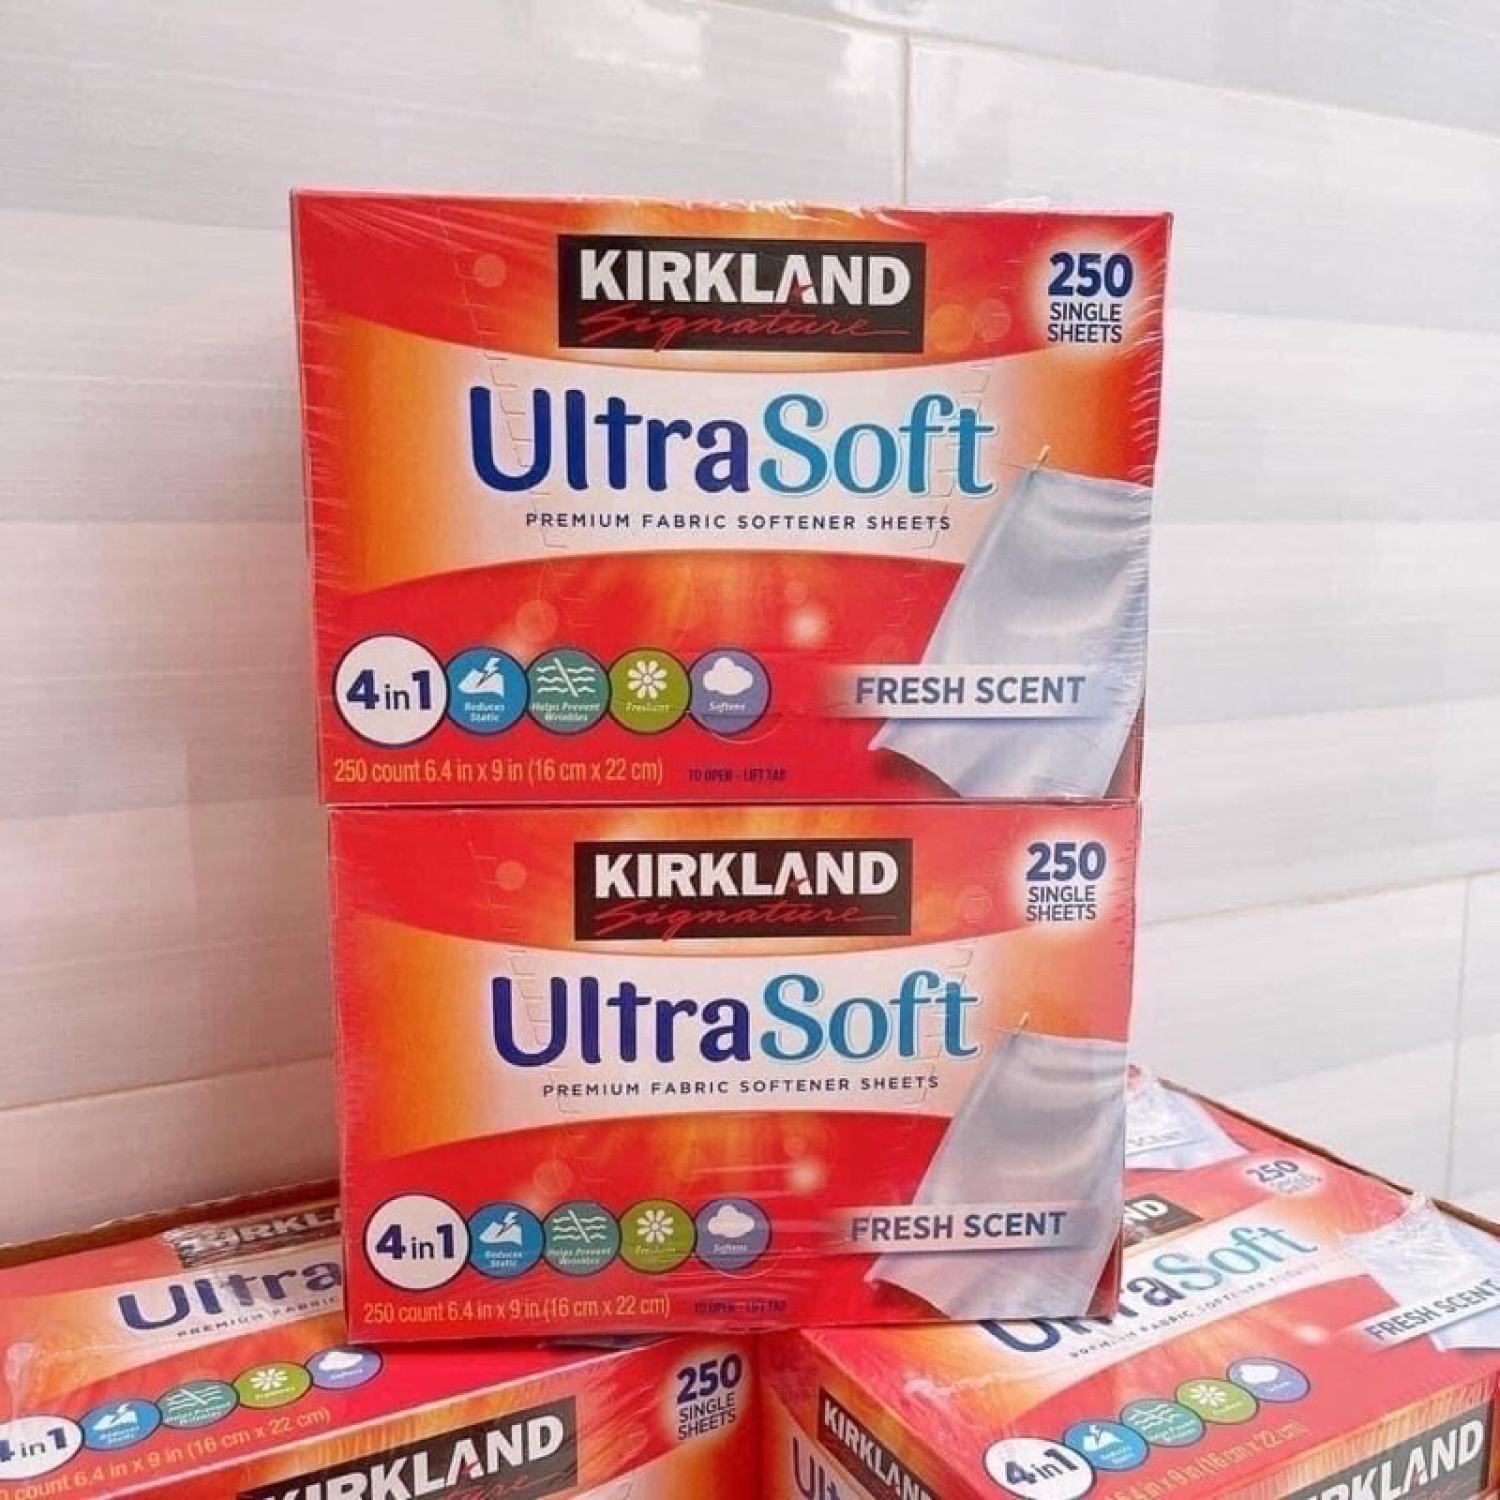 Giấy Thơm Quần Áo Kirkland Ultrasoft 250 miếng - Hãng Mỹ